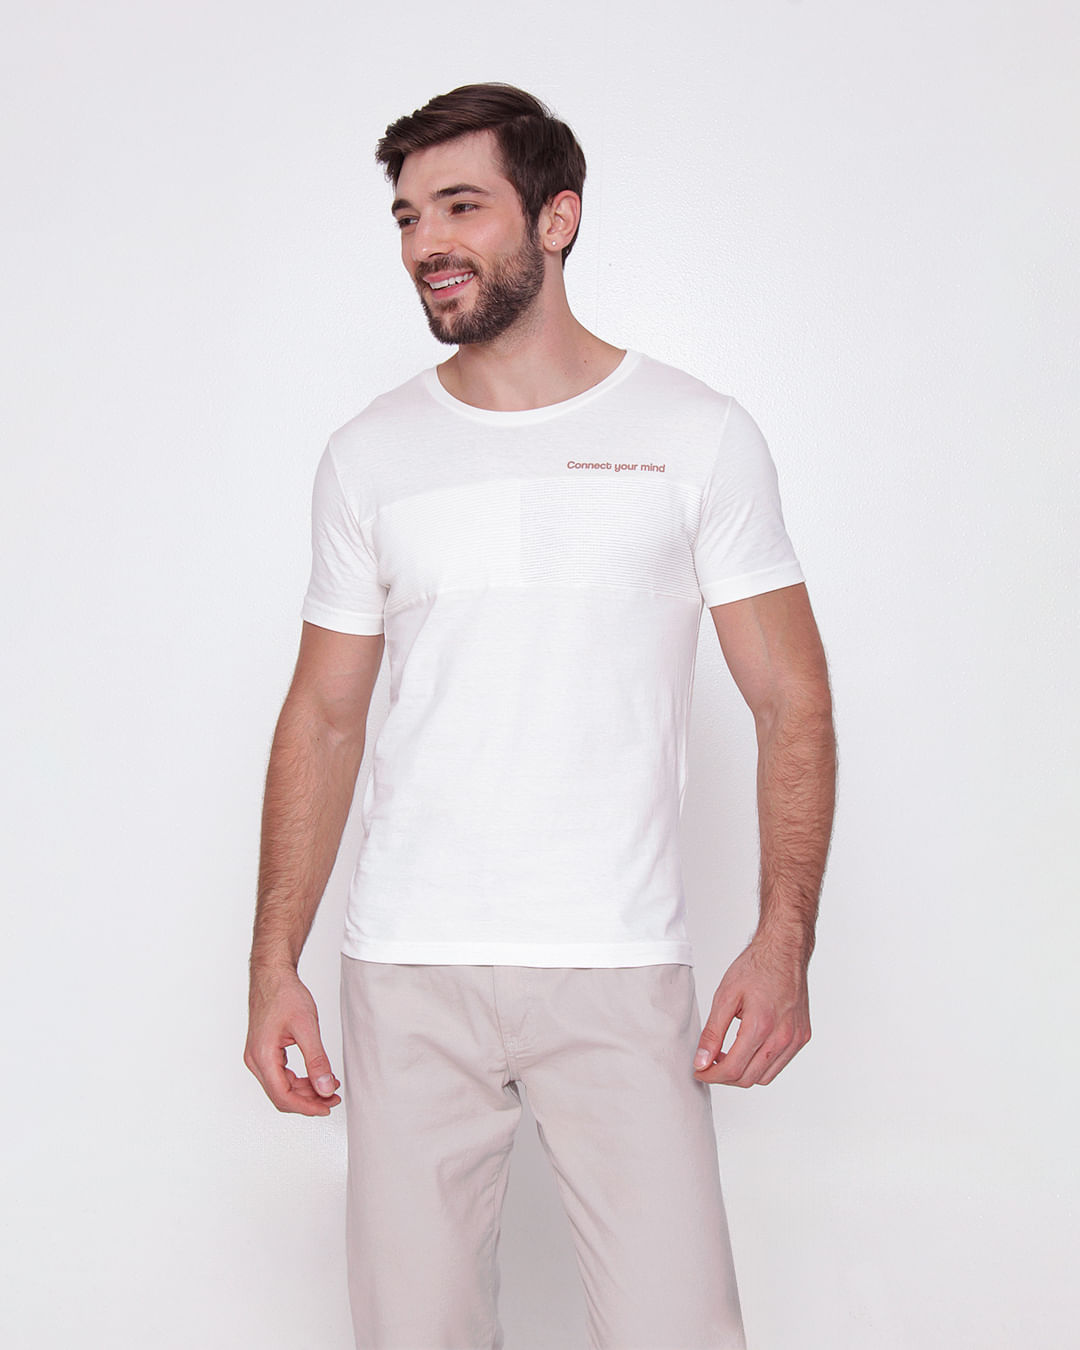 Camiseta---Comeia-Recorte-24008--Pgg---Off-White